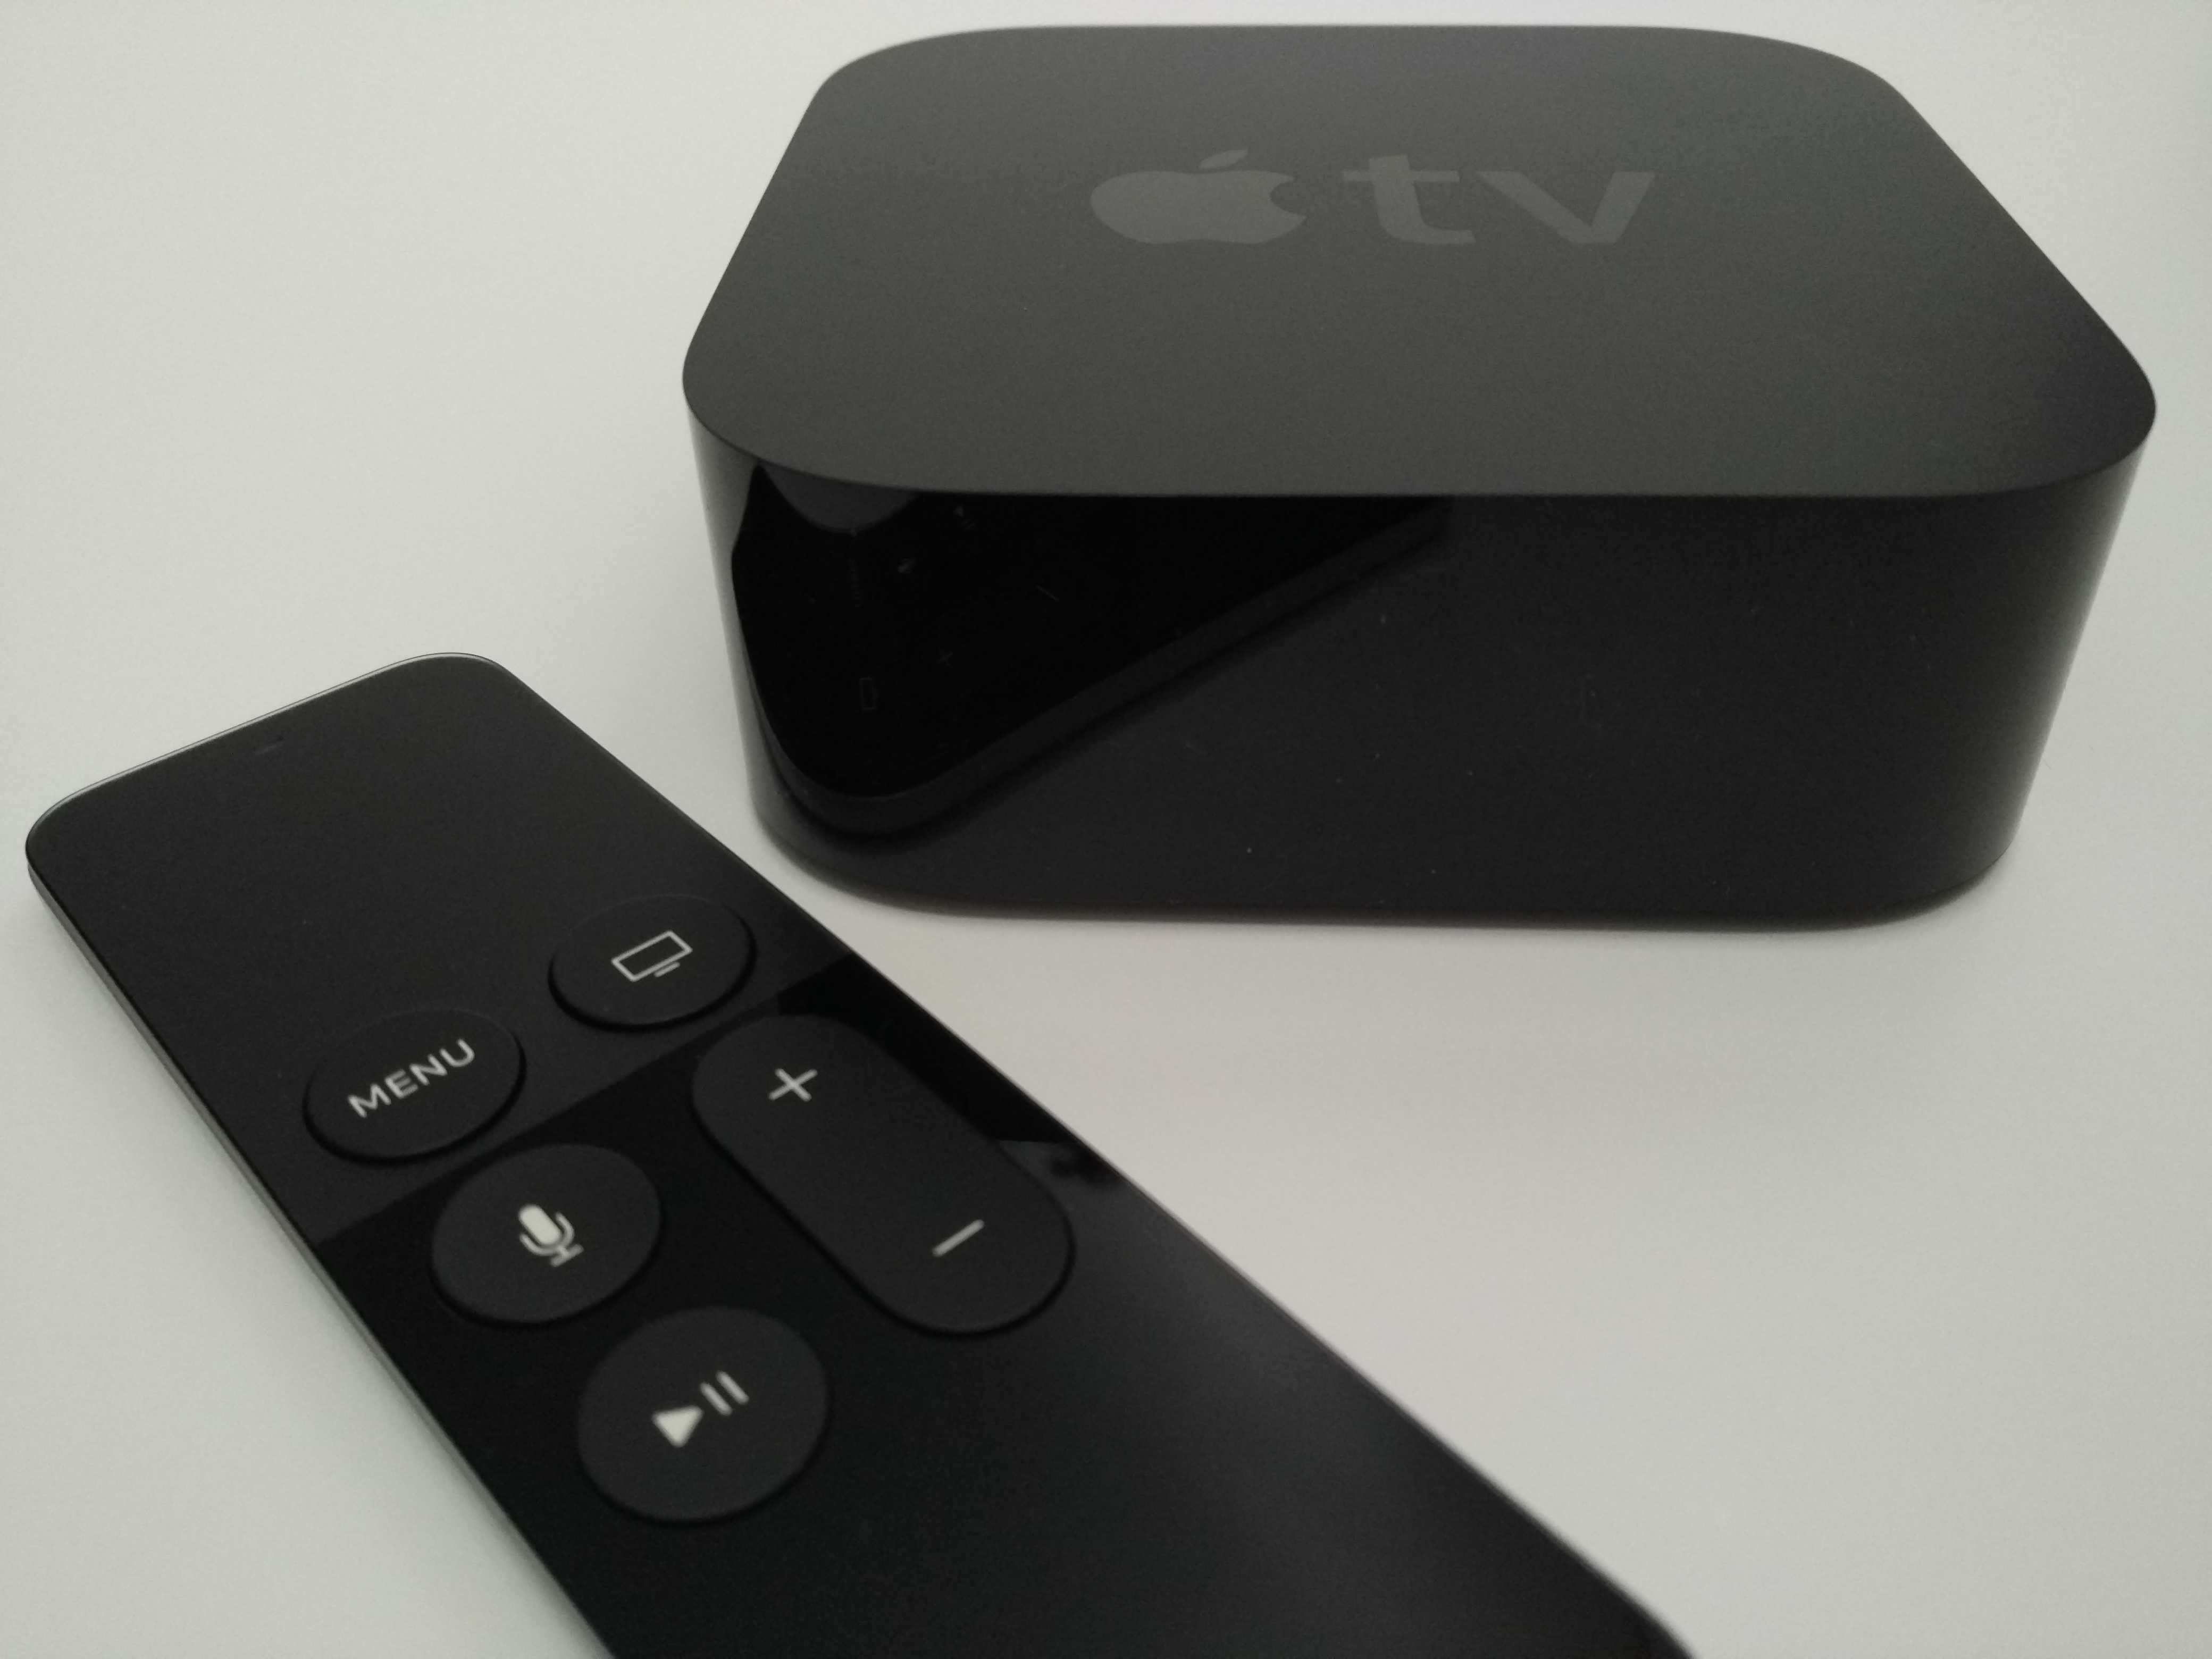 Медиаплеер Apple TV - подробные характеристики обзоры видео фото Цены в интернет-магазинах где можно купить медиаплеер Apple TV